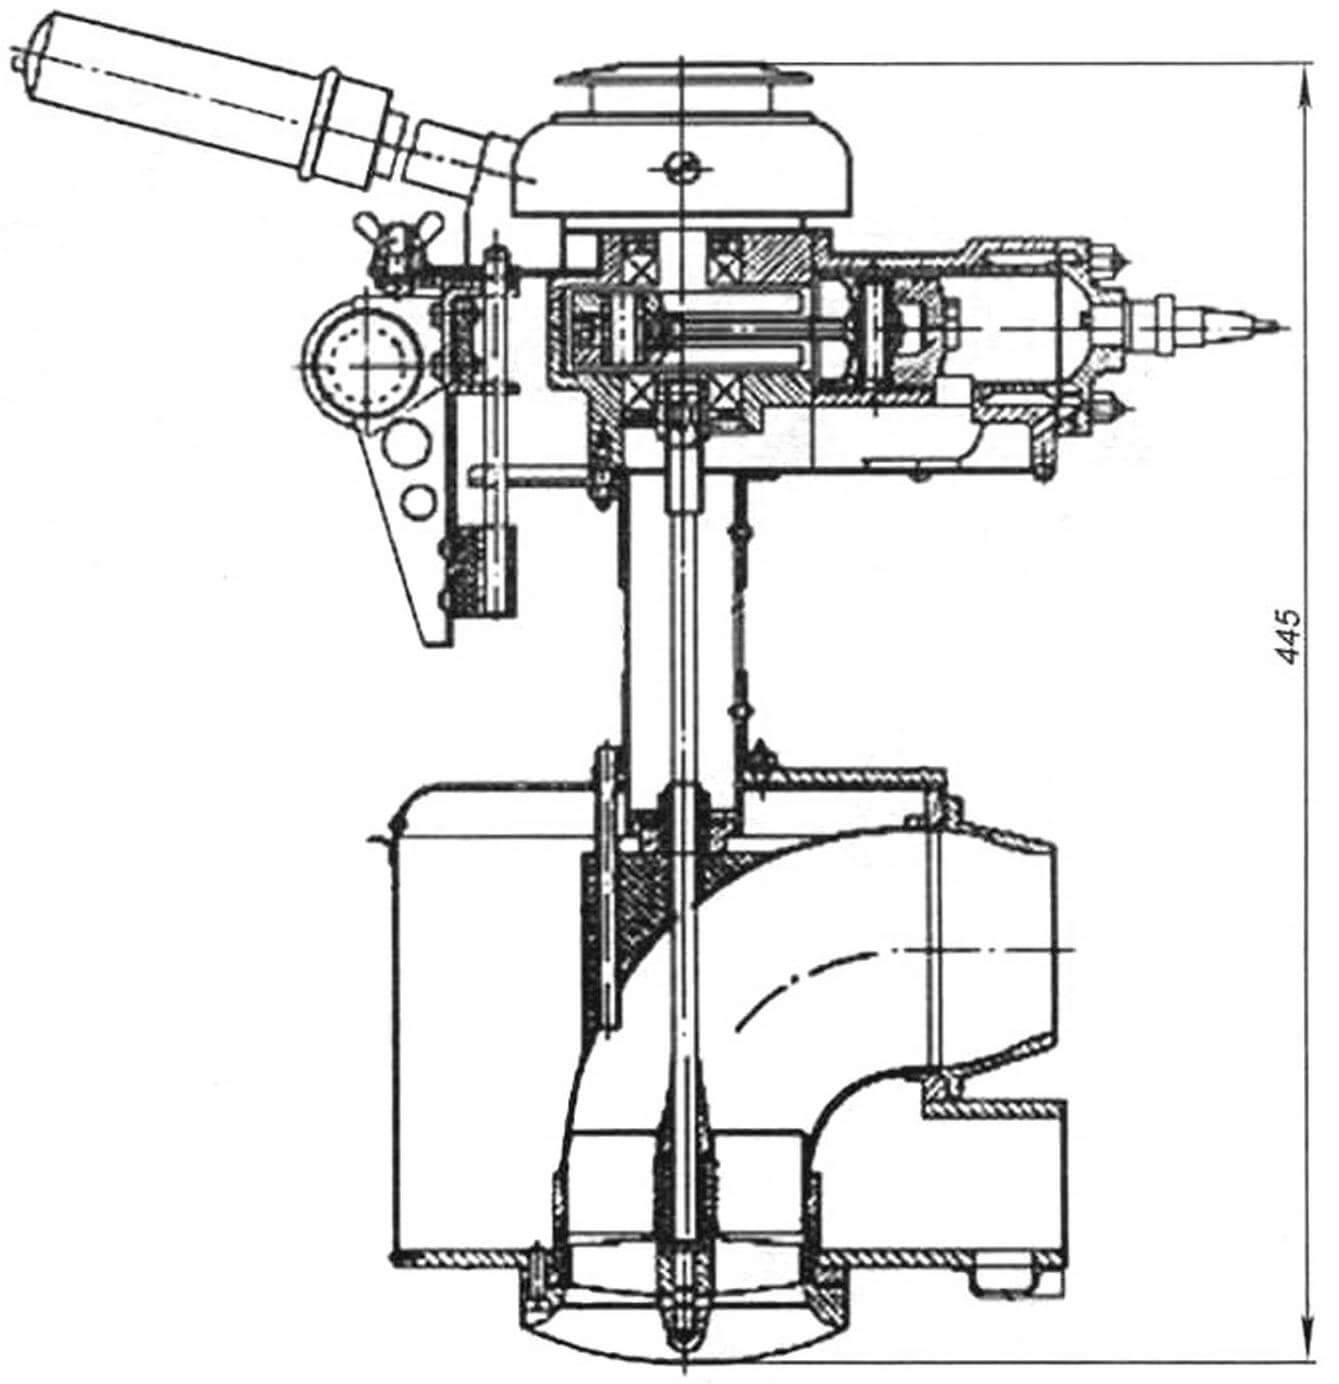 Первый прототип «Микроши», 1971 г. Самодельный лодочный мотор Н.С. Иванова для байдарки с двигателем Д-5 и осевым водометом с рабочим колесом диаметром 83 мм